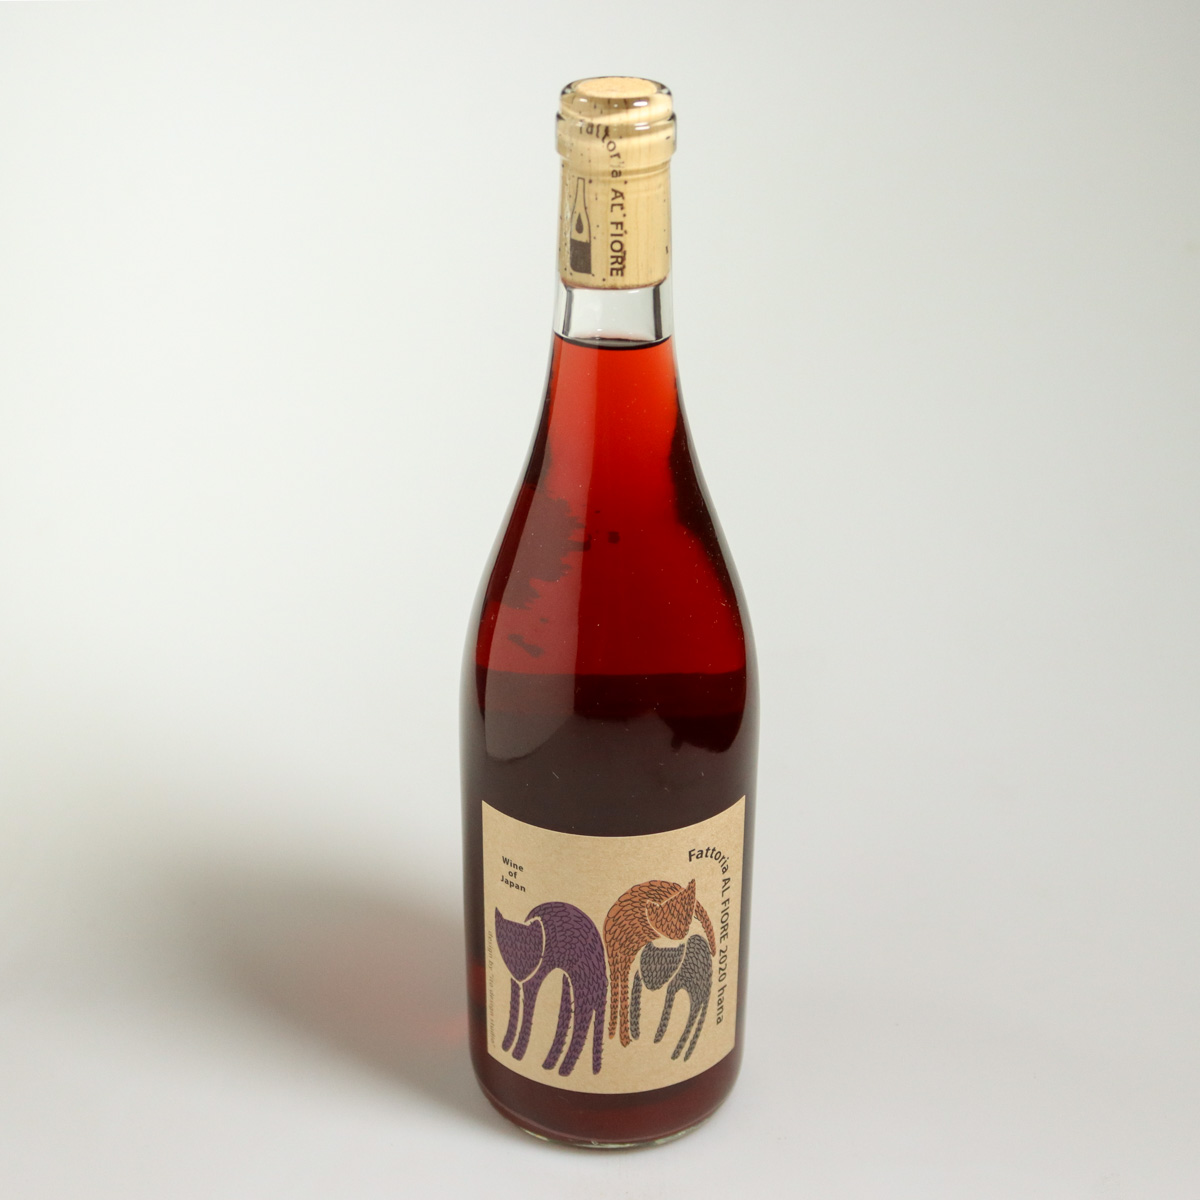 vin nature japonais rouge Hana 2020 par Fattoria al Fiore